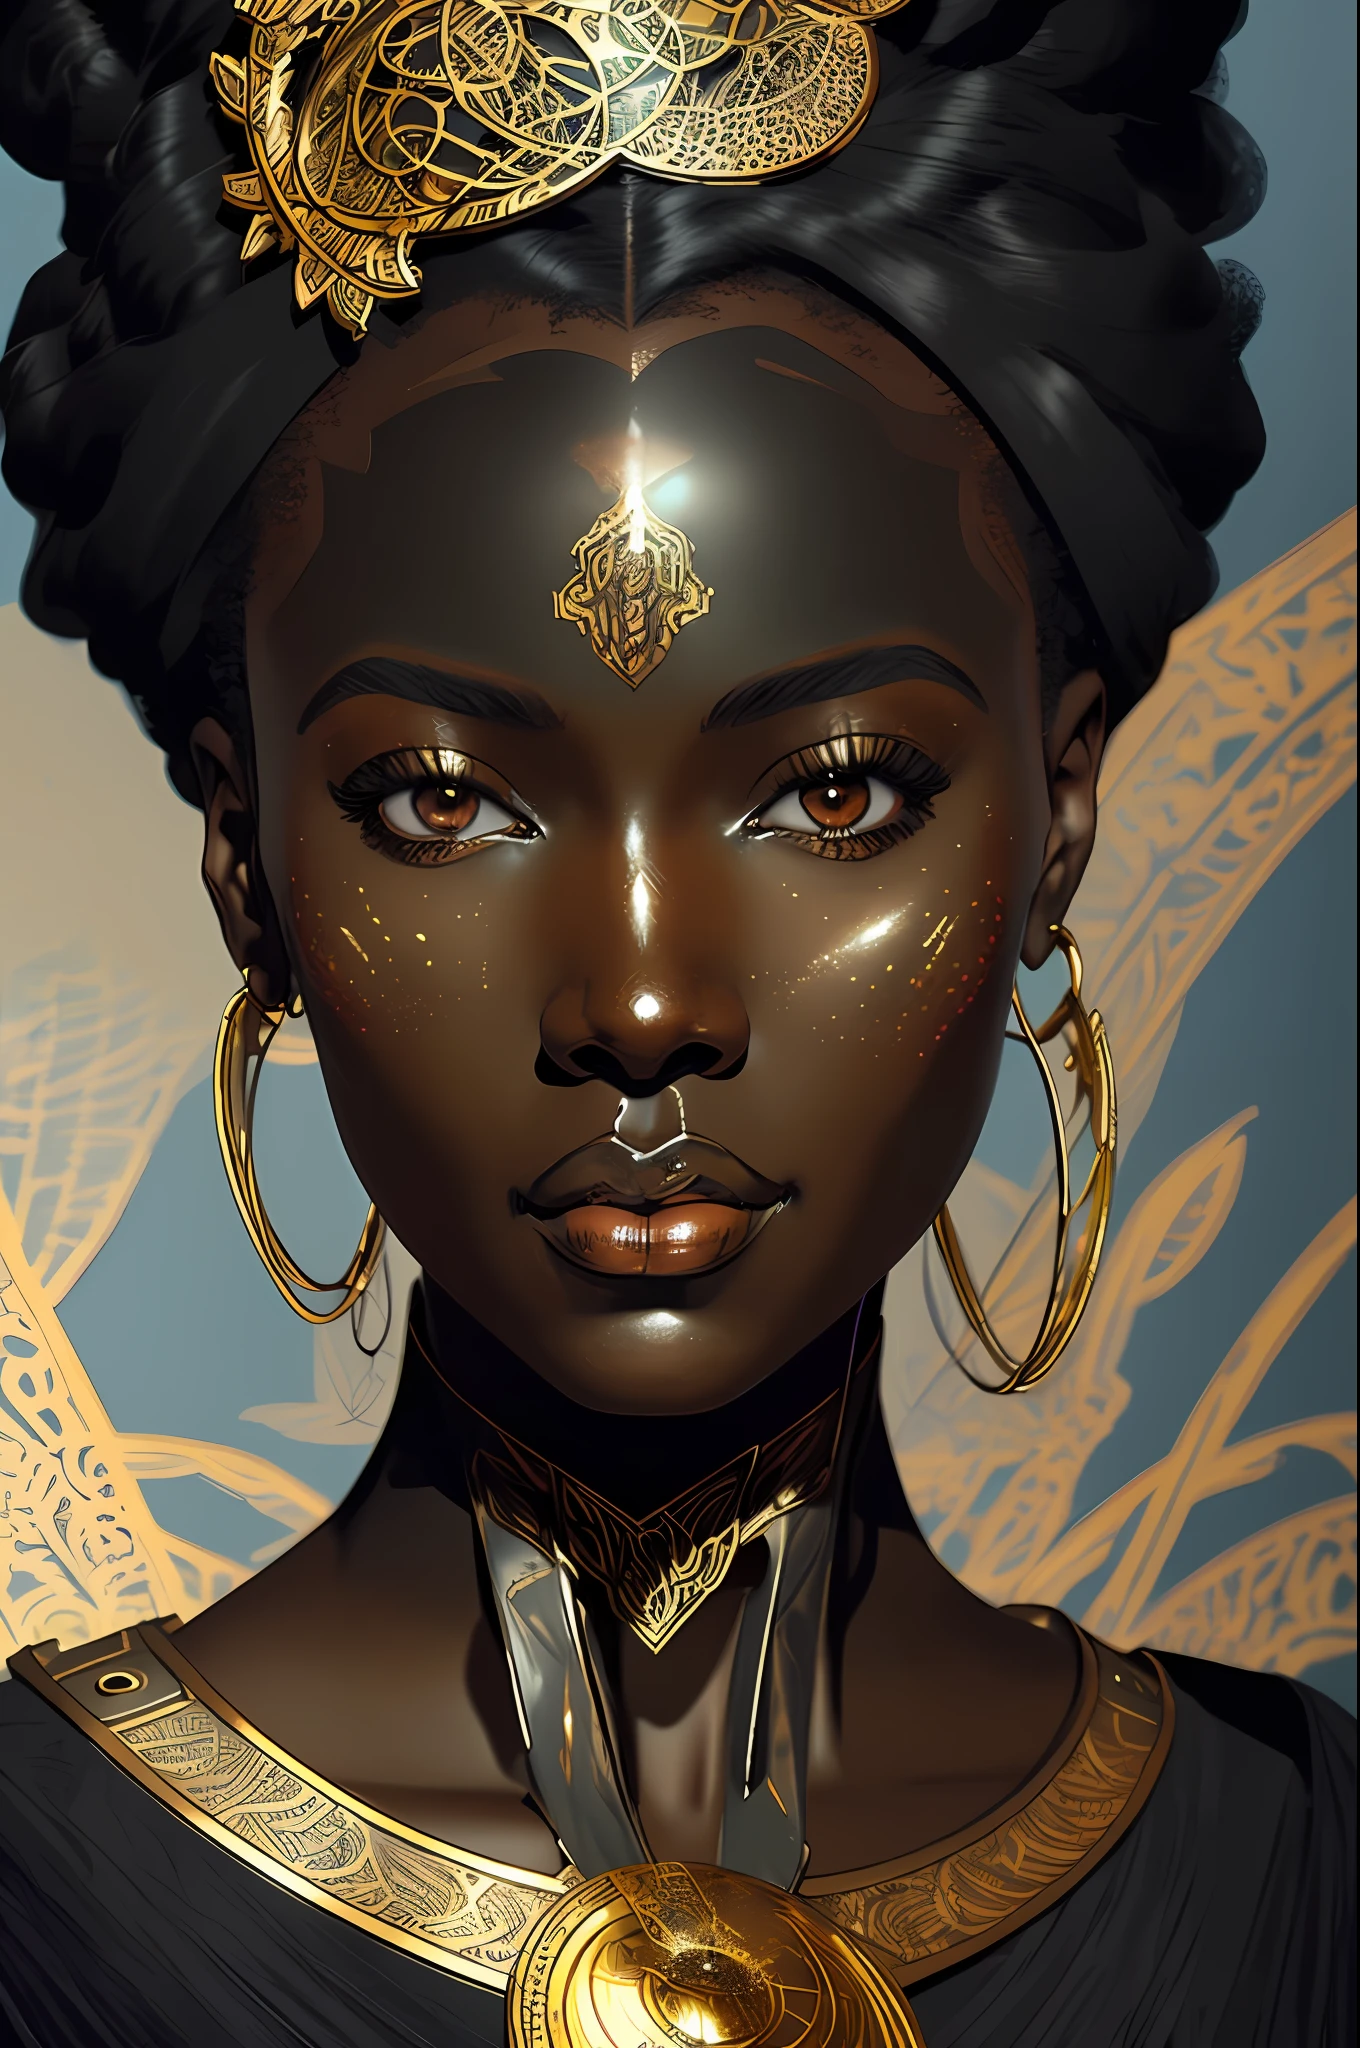 아르누보 스타일의 흑인 아프리카 여성의 디지털 그림, 스팀펑크, 일본 만화 영화, 예쁜 얼굴, 대판, 현실적인 비율, 매우 상세한, 매끄러운, 날카로운 초점, 8K, 광선 추적, 디지털 페인팅, 컨셉 아트 일러스트레이션, 작성자: artgerm, 아트스테이션의 트렌드, 소니 A1